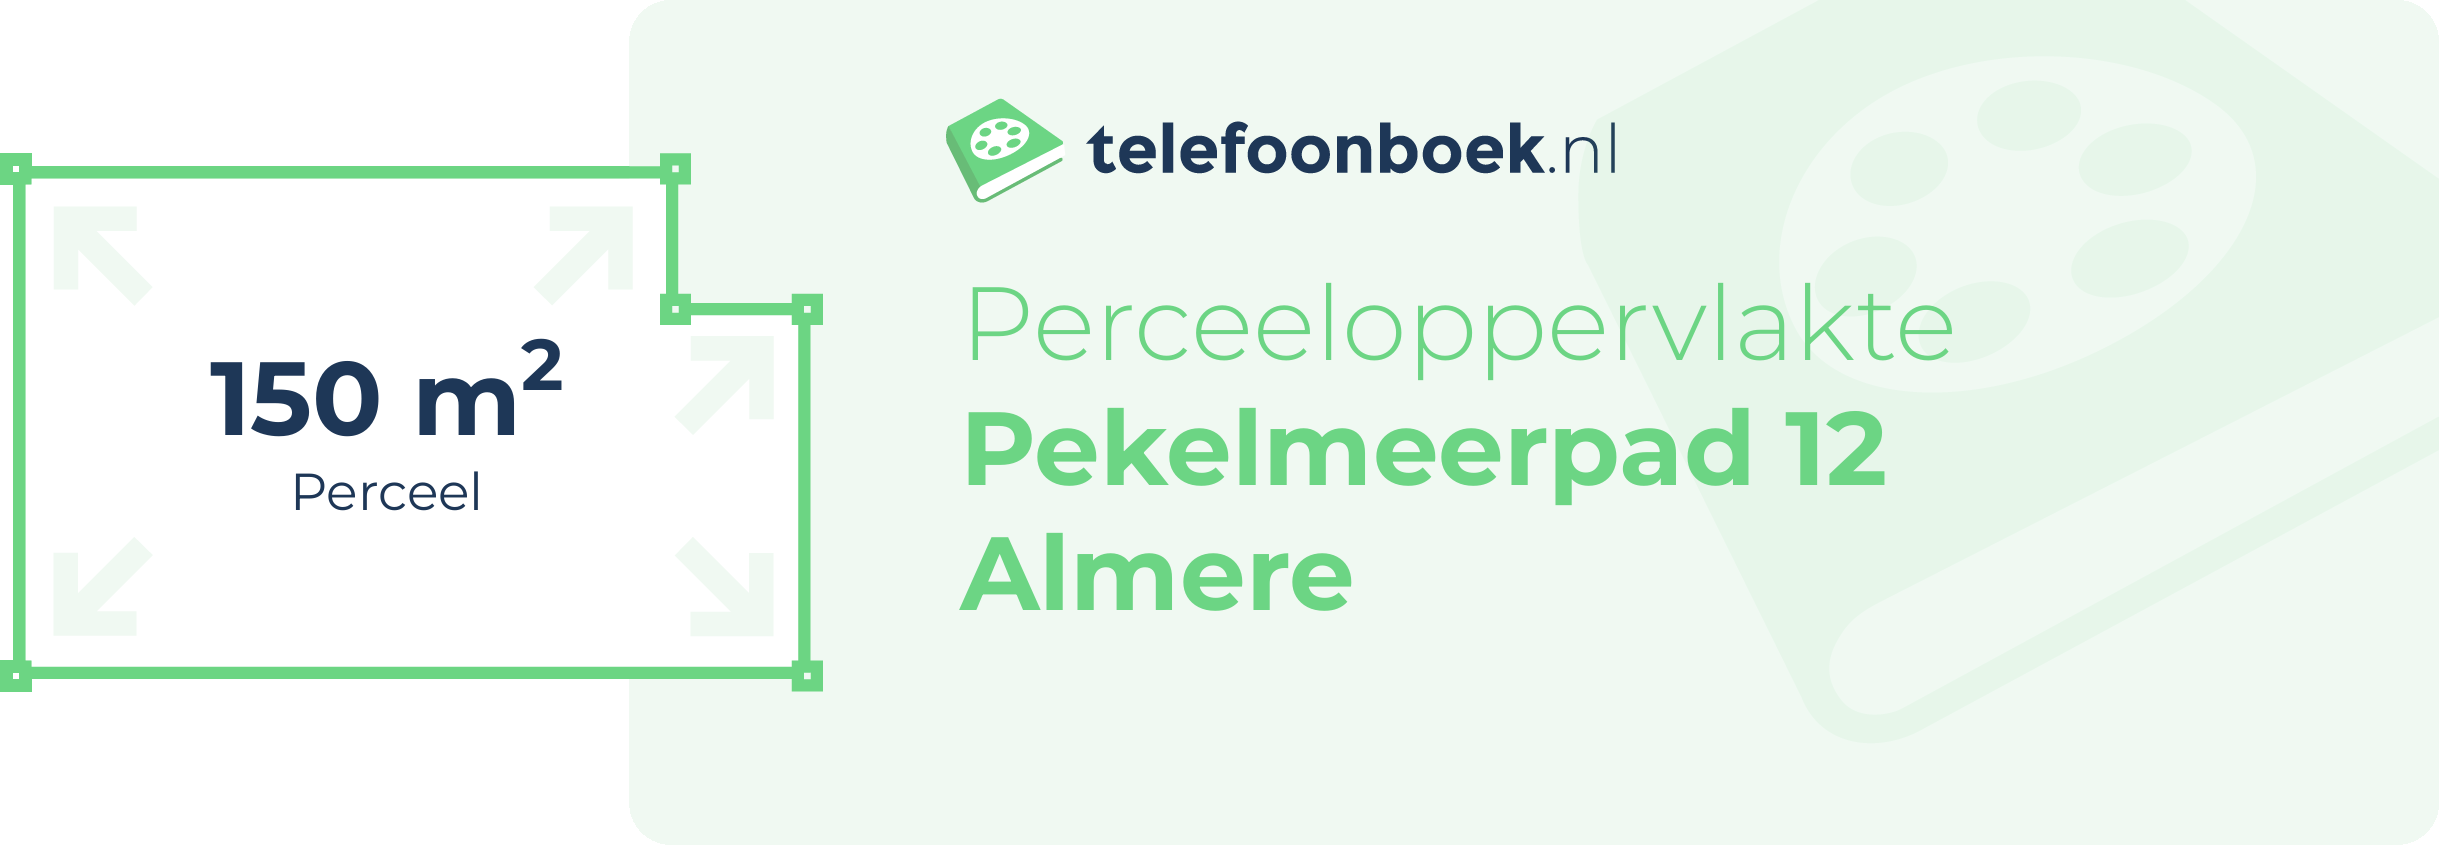 Perceeloppervlakte Pekelmeerpad 12 Almere